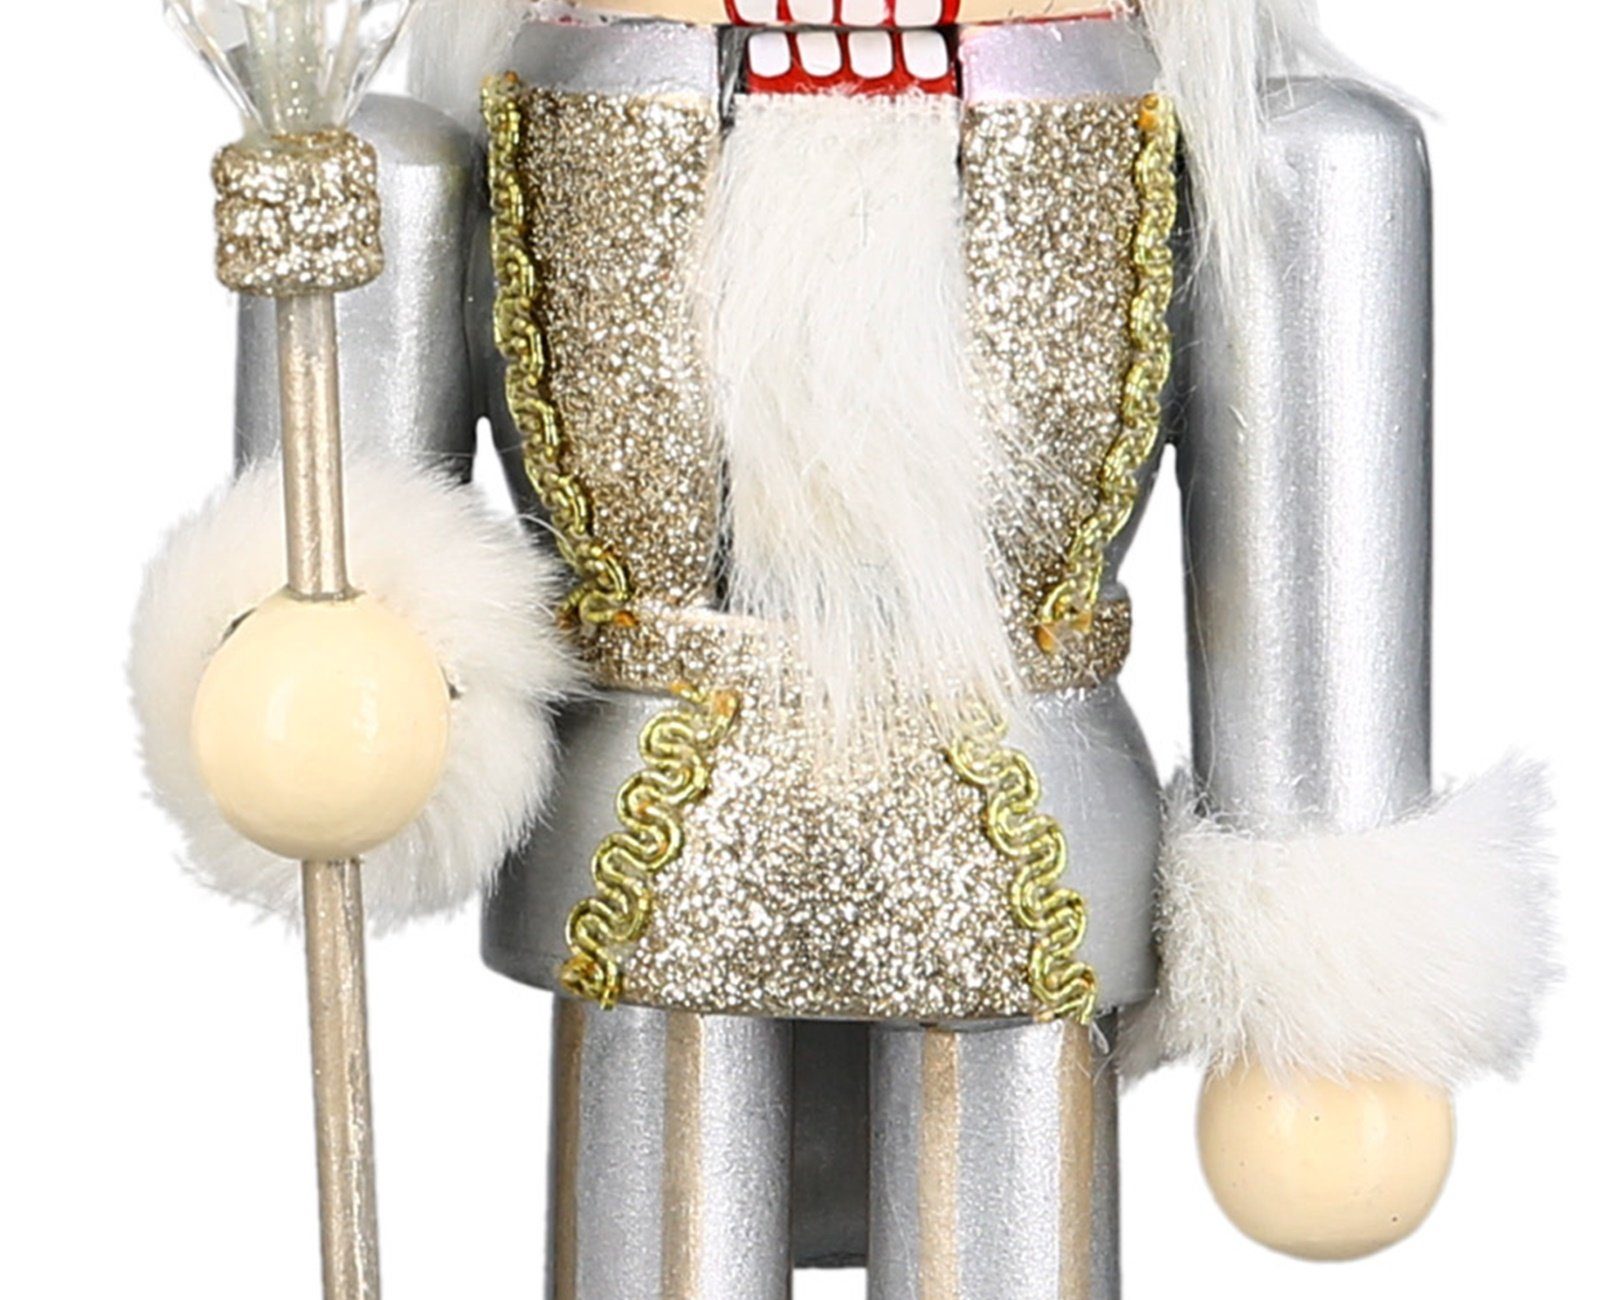 dekojohnson Weihnachtsfigur dekojohnson traditionelle Nussknacker-Figur-König